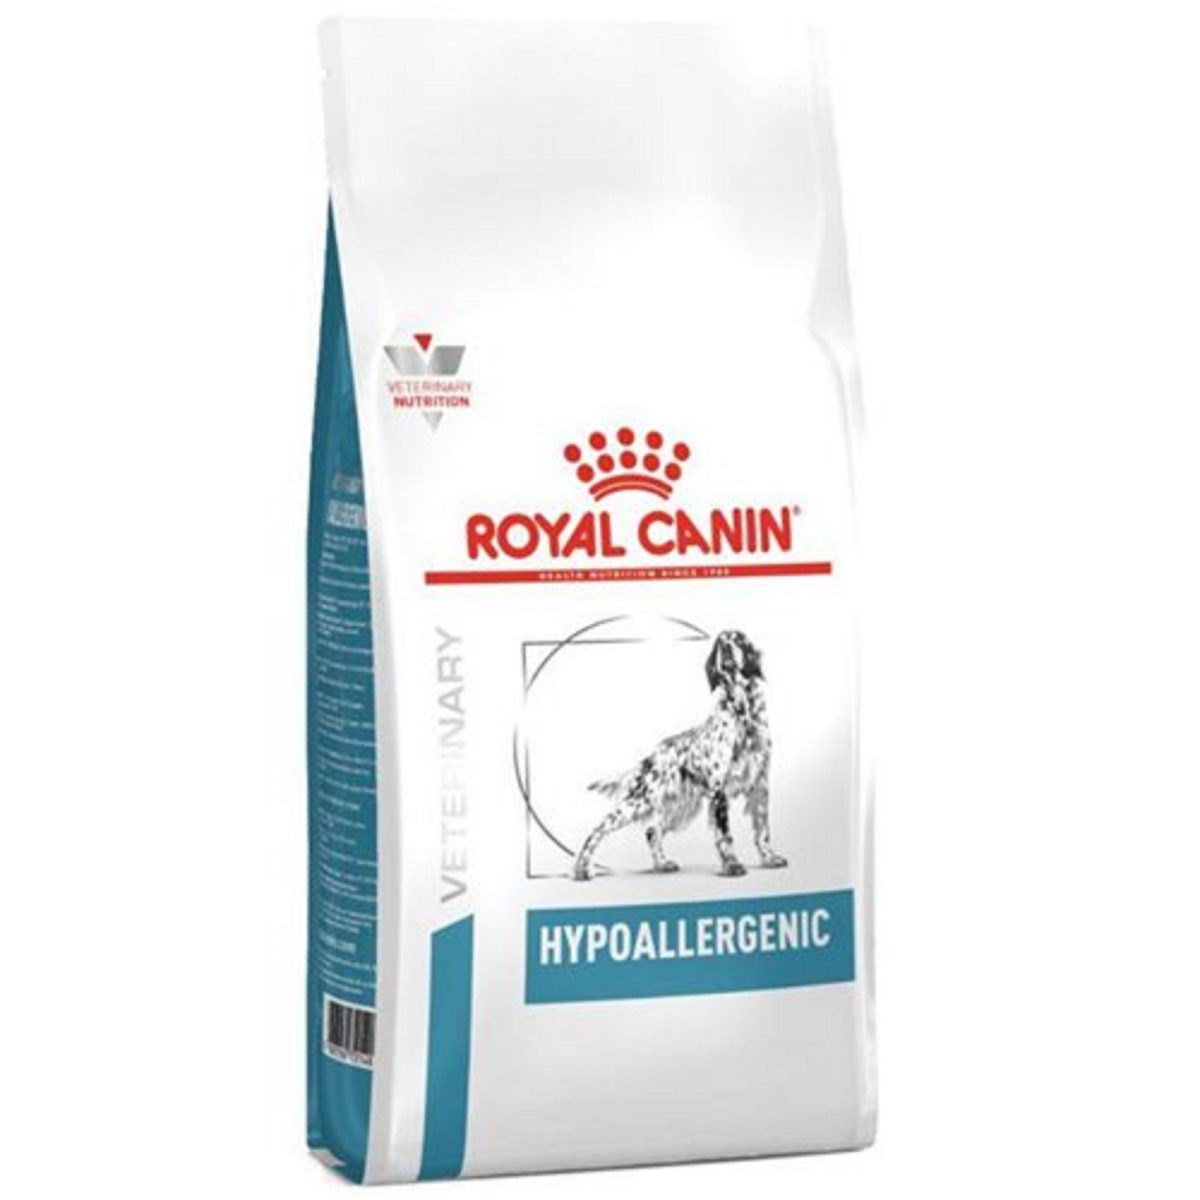 غذای خشک درمانی سگ رویال کنین مدل هایپو آلرجنیک ROYAL CANIN HYPOALLERGENIC 14KG